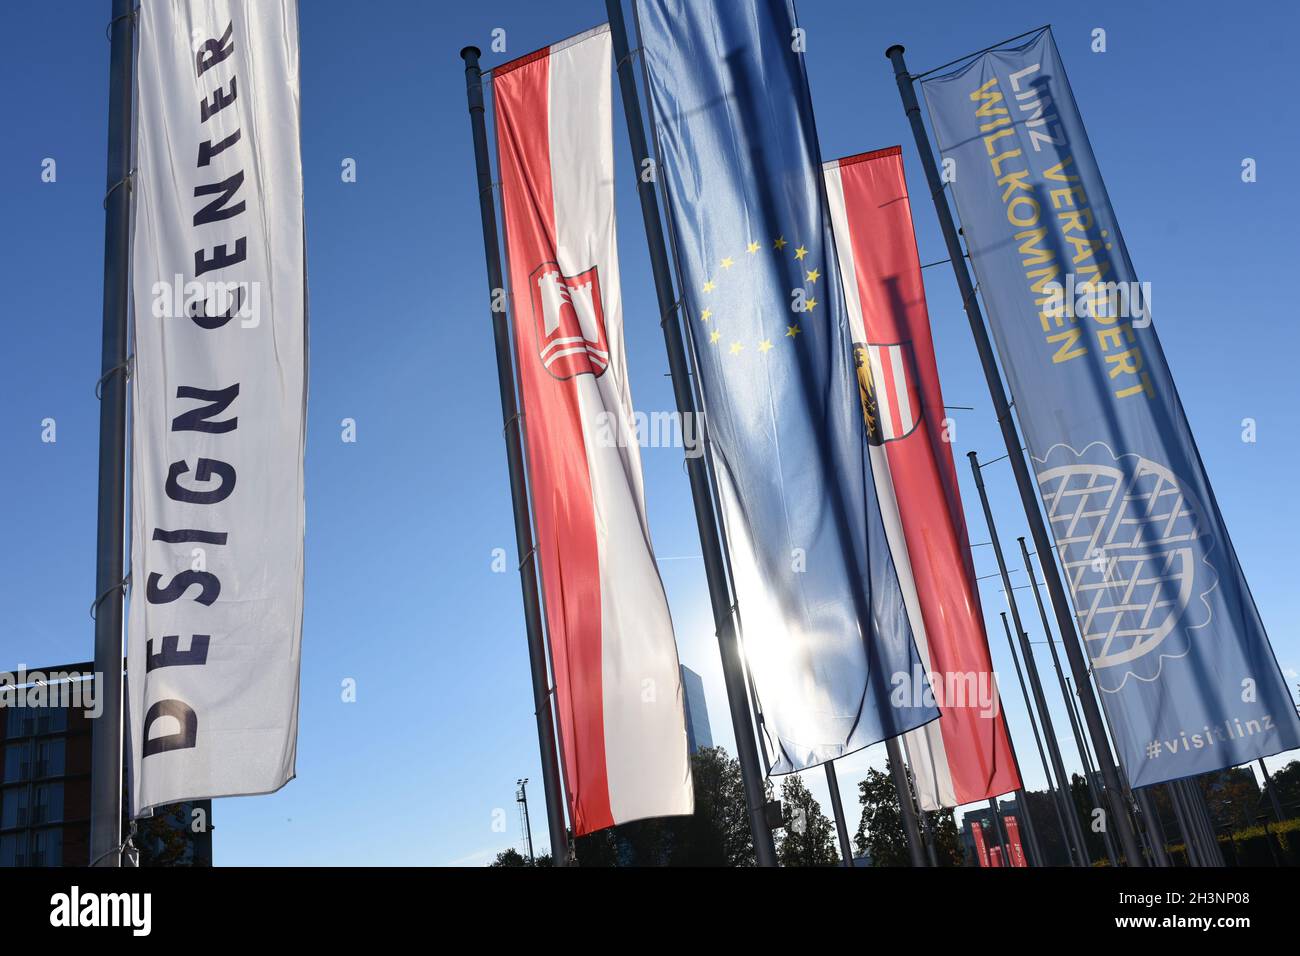 Flaggen vor dem Ausstellungs- und Veranstaltungszentrum 'Design Center' in Linz, Österreich, Europa - Flags in front of the 'Design Center' exhibition Stock Photo